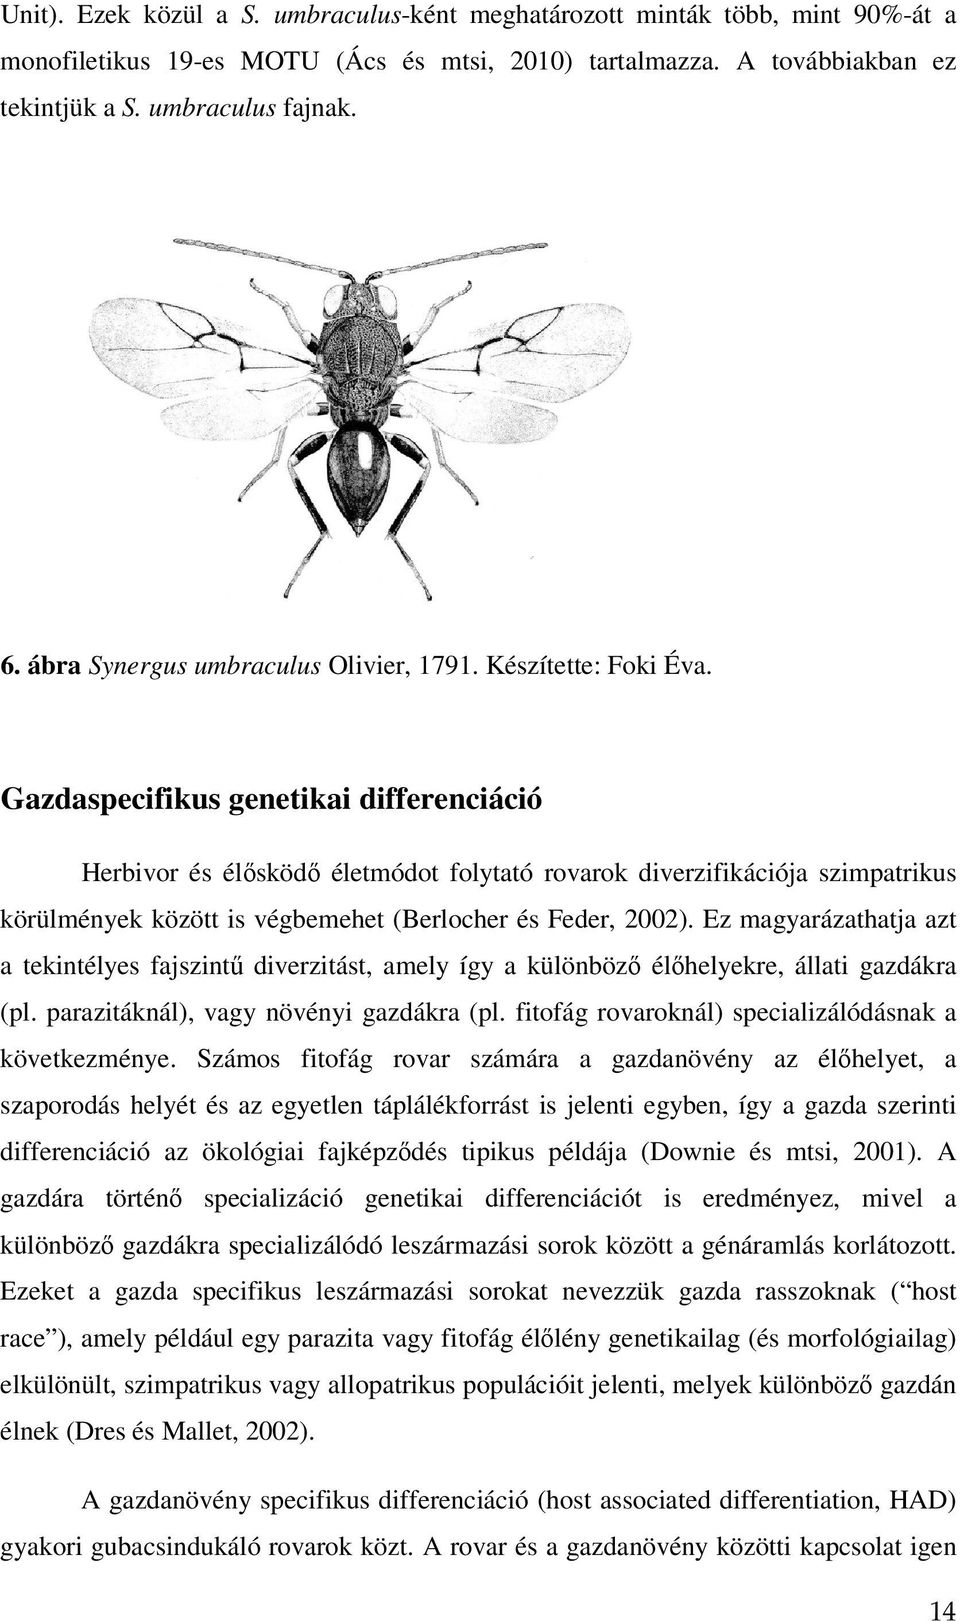 Gazdaspecifikus genetikai differenciáció Herbivor és élısködı életmódot folytató rovarok diverzifikációja szimpatrikus körülmények között is végbemehet (Berlocher és Feder, 2002).